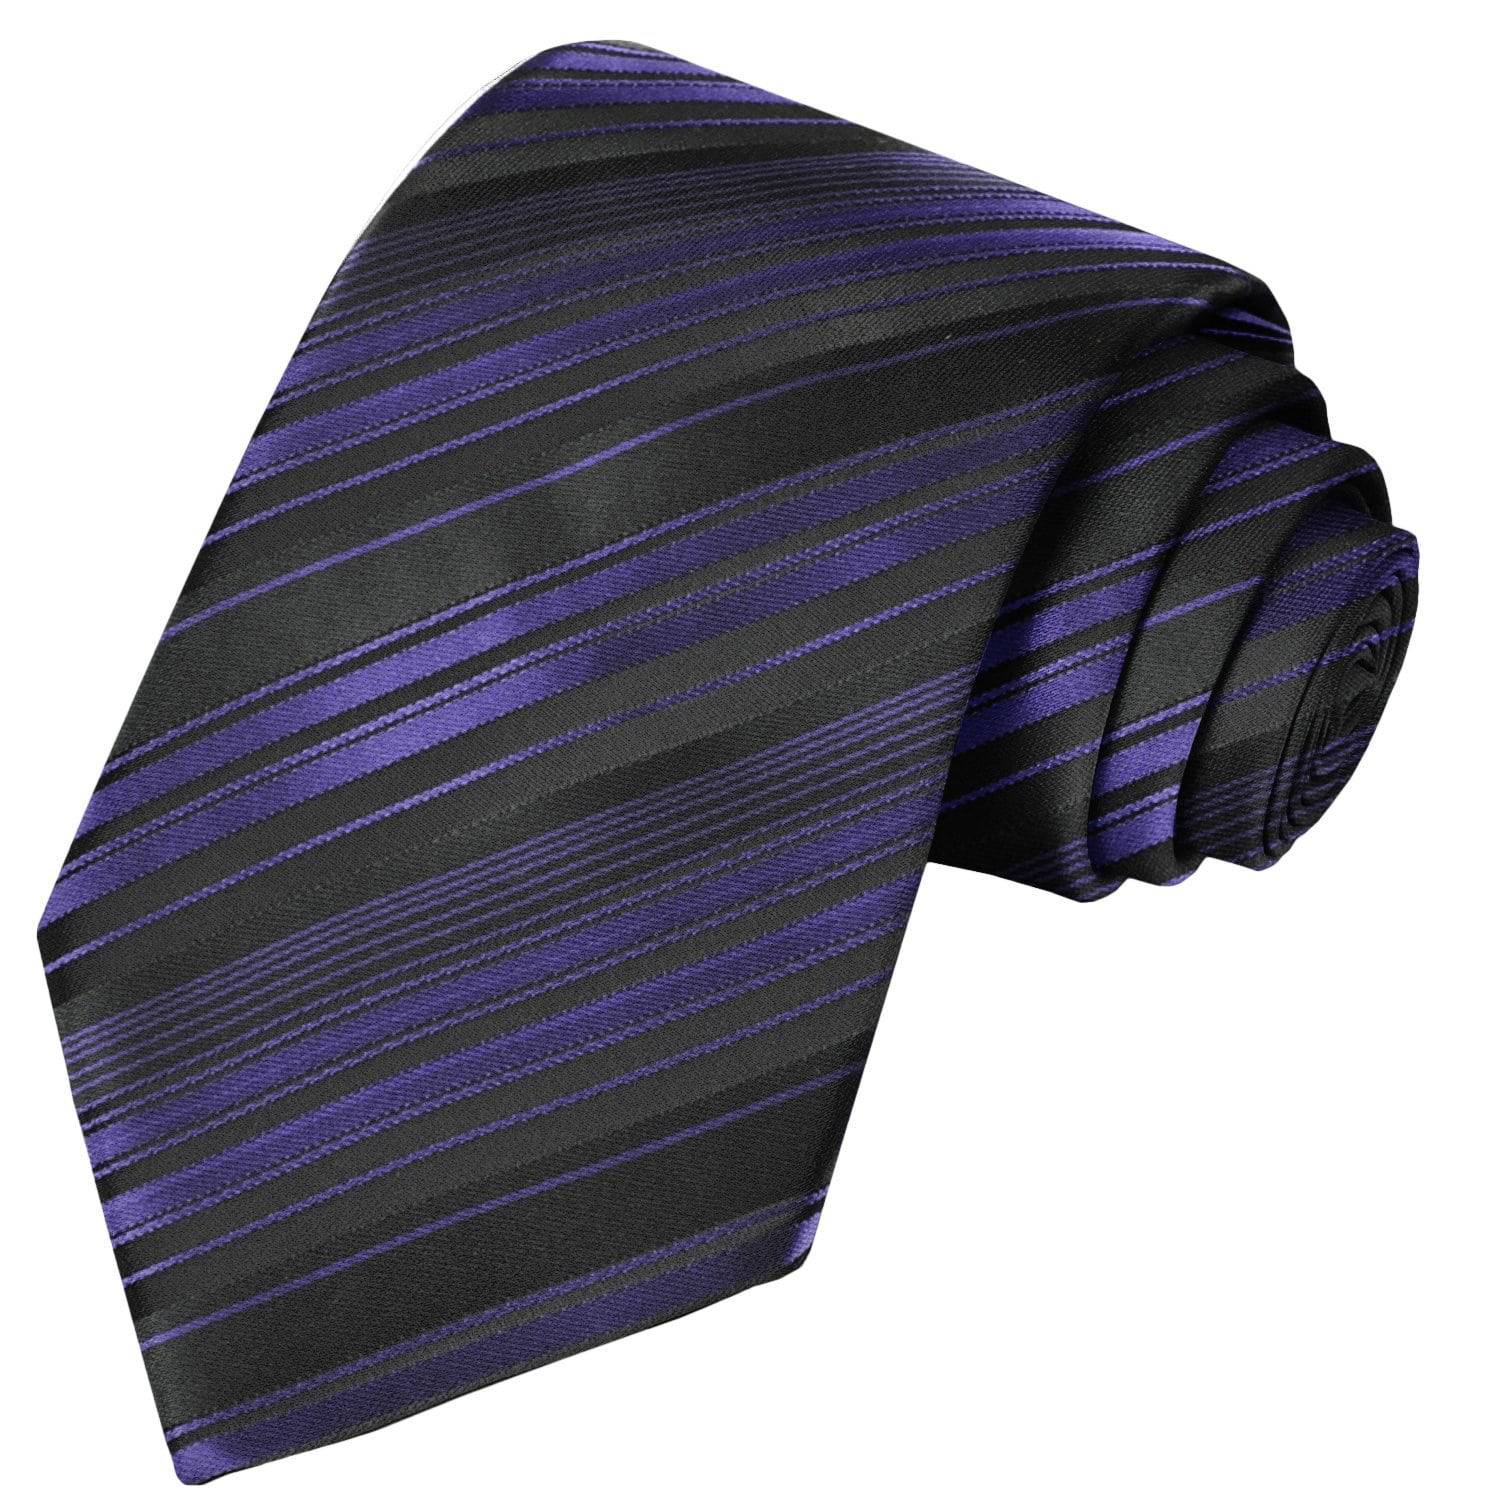 Black-Violet Striped Tie - Tie, bowtie, pocket square  | Kissties